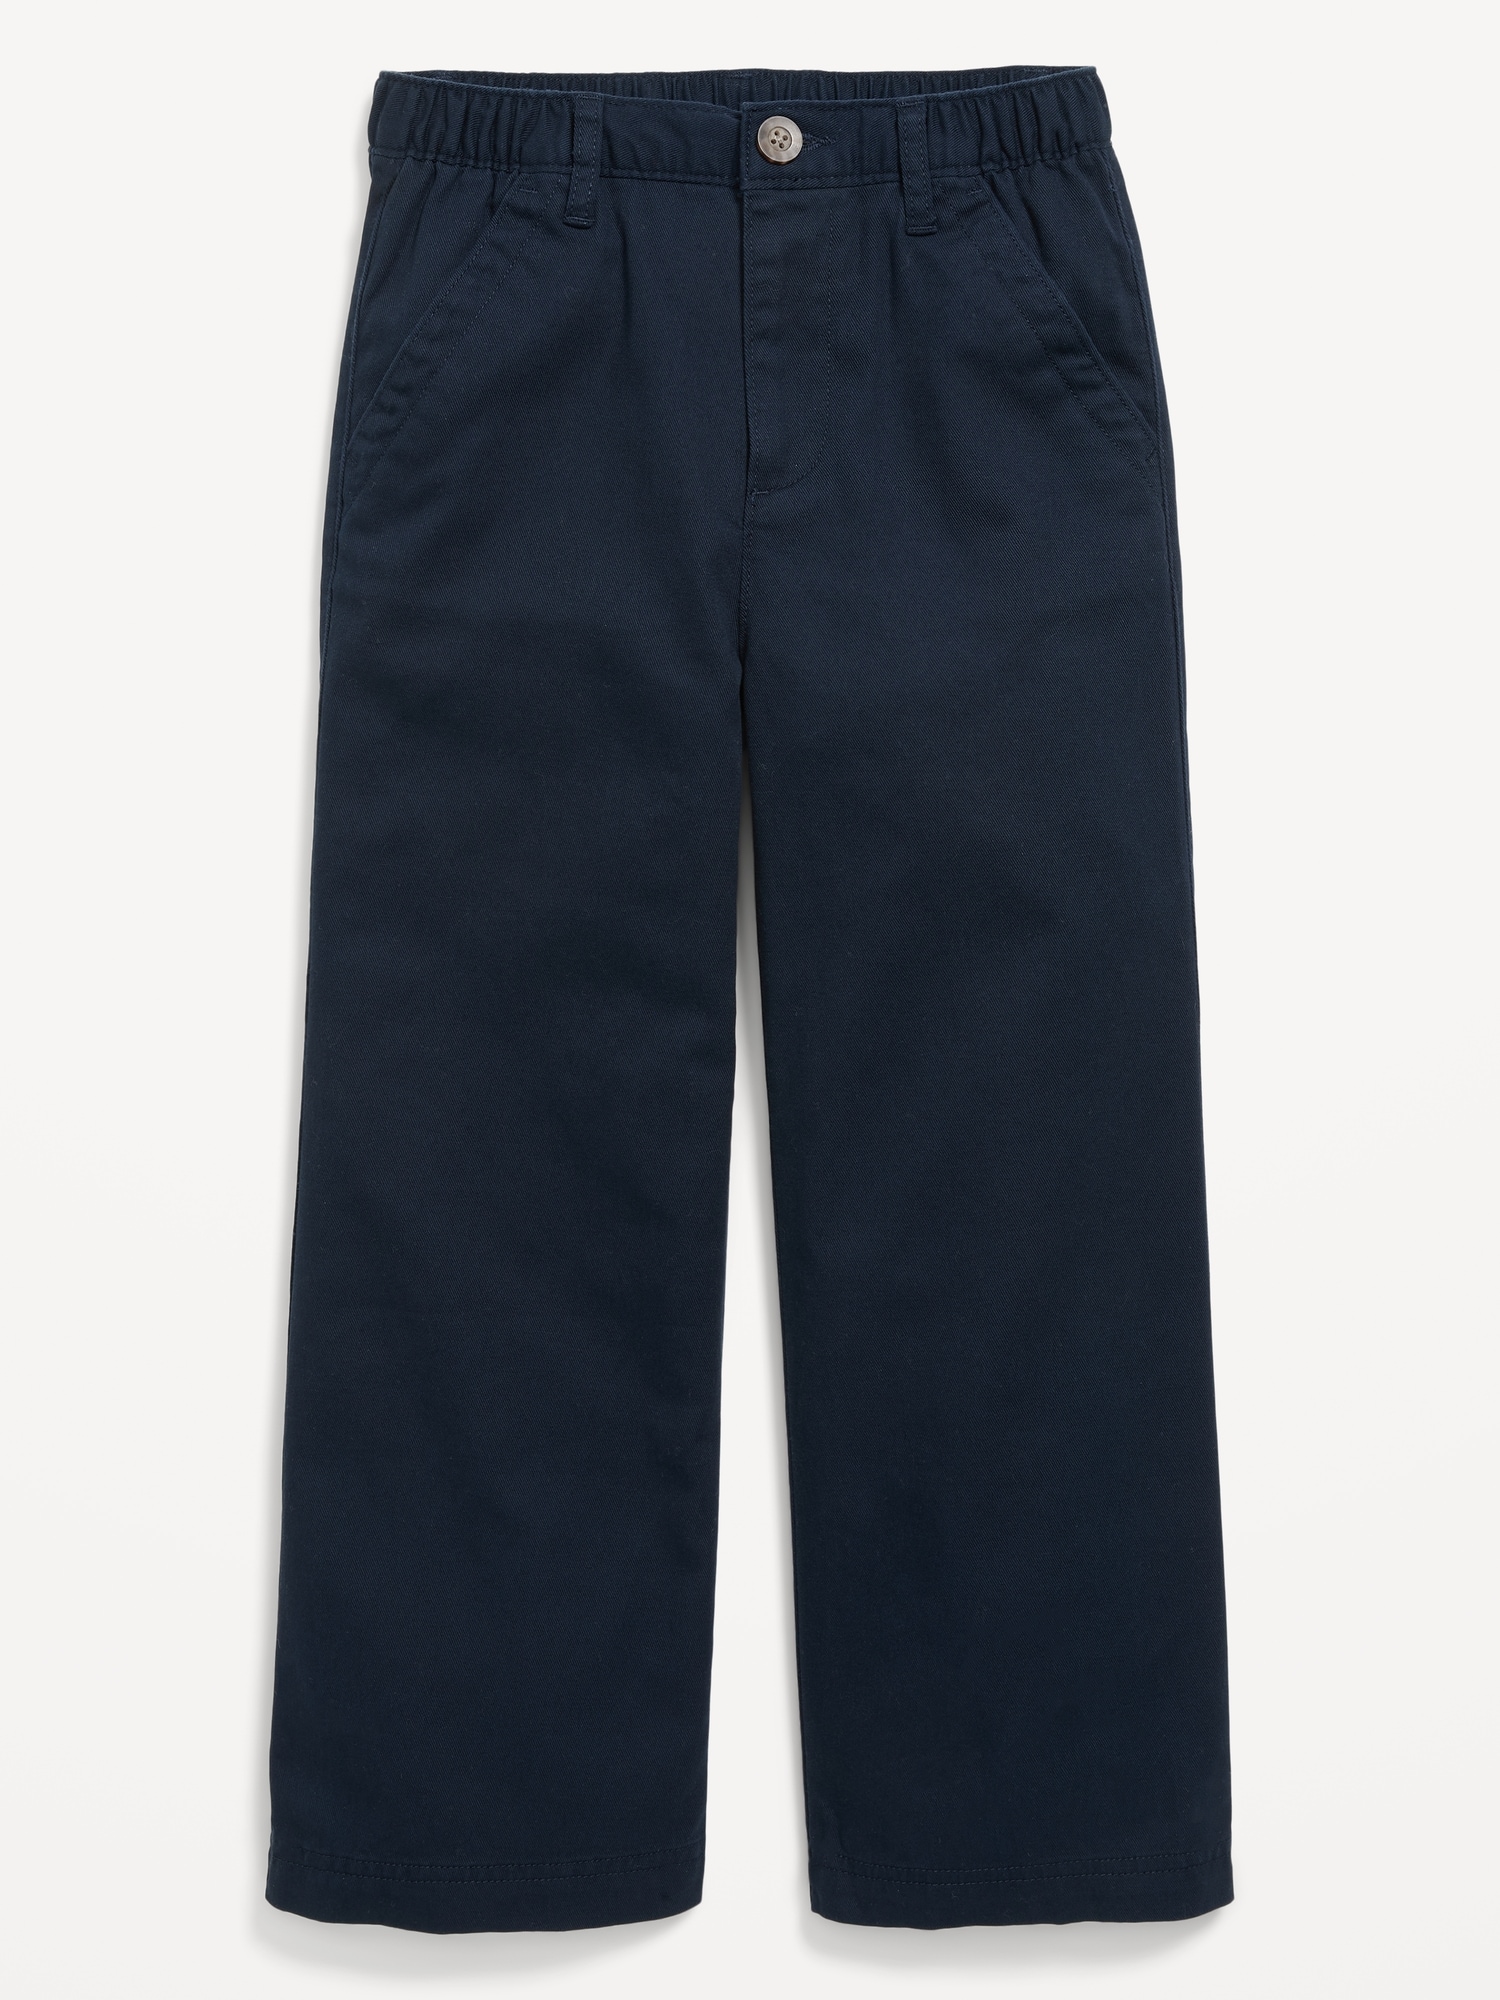 Men's School Uniform pants – Looking Good Pine Bluff